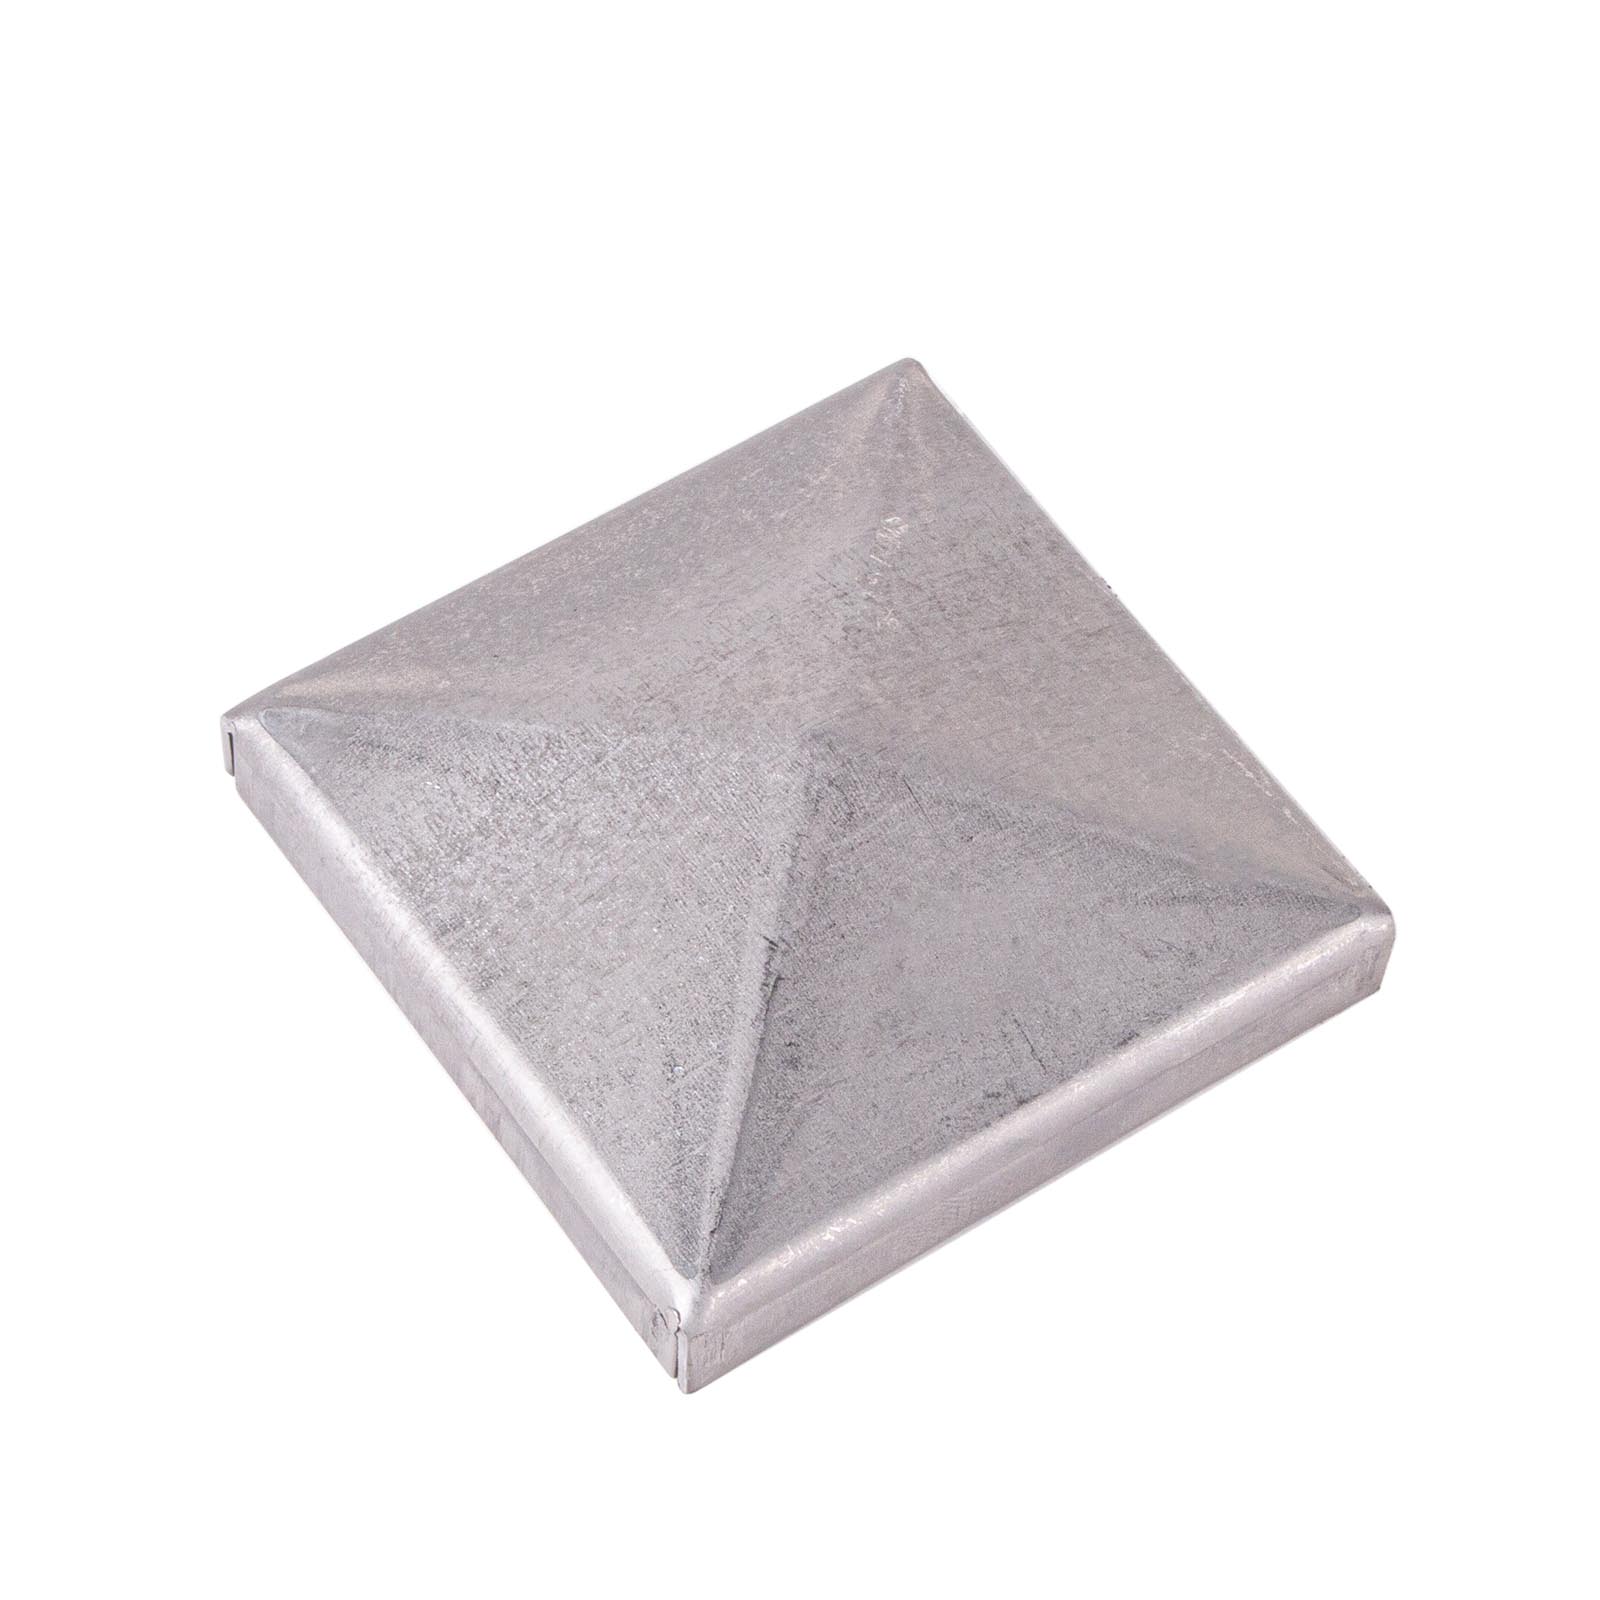 Pfostendeckel Pyramide mit Rand Stahl | Edelstahl (40- 200mm)